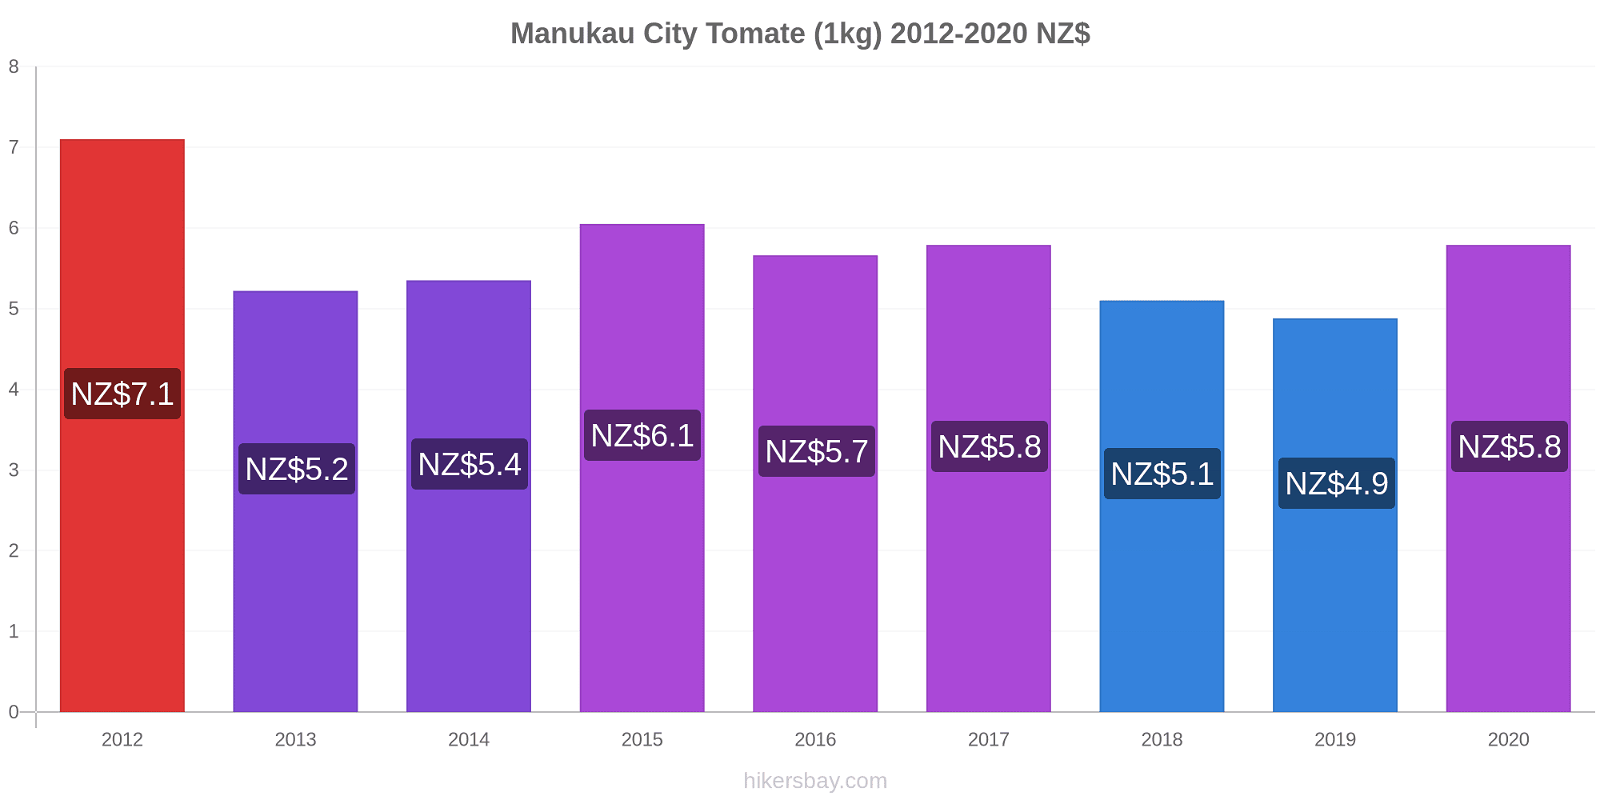 Manukau City changements de prix Tomate (1kg) hikersbay.com